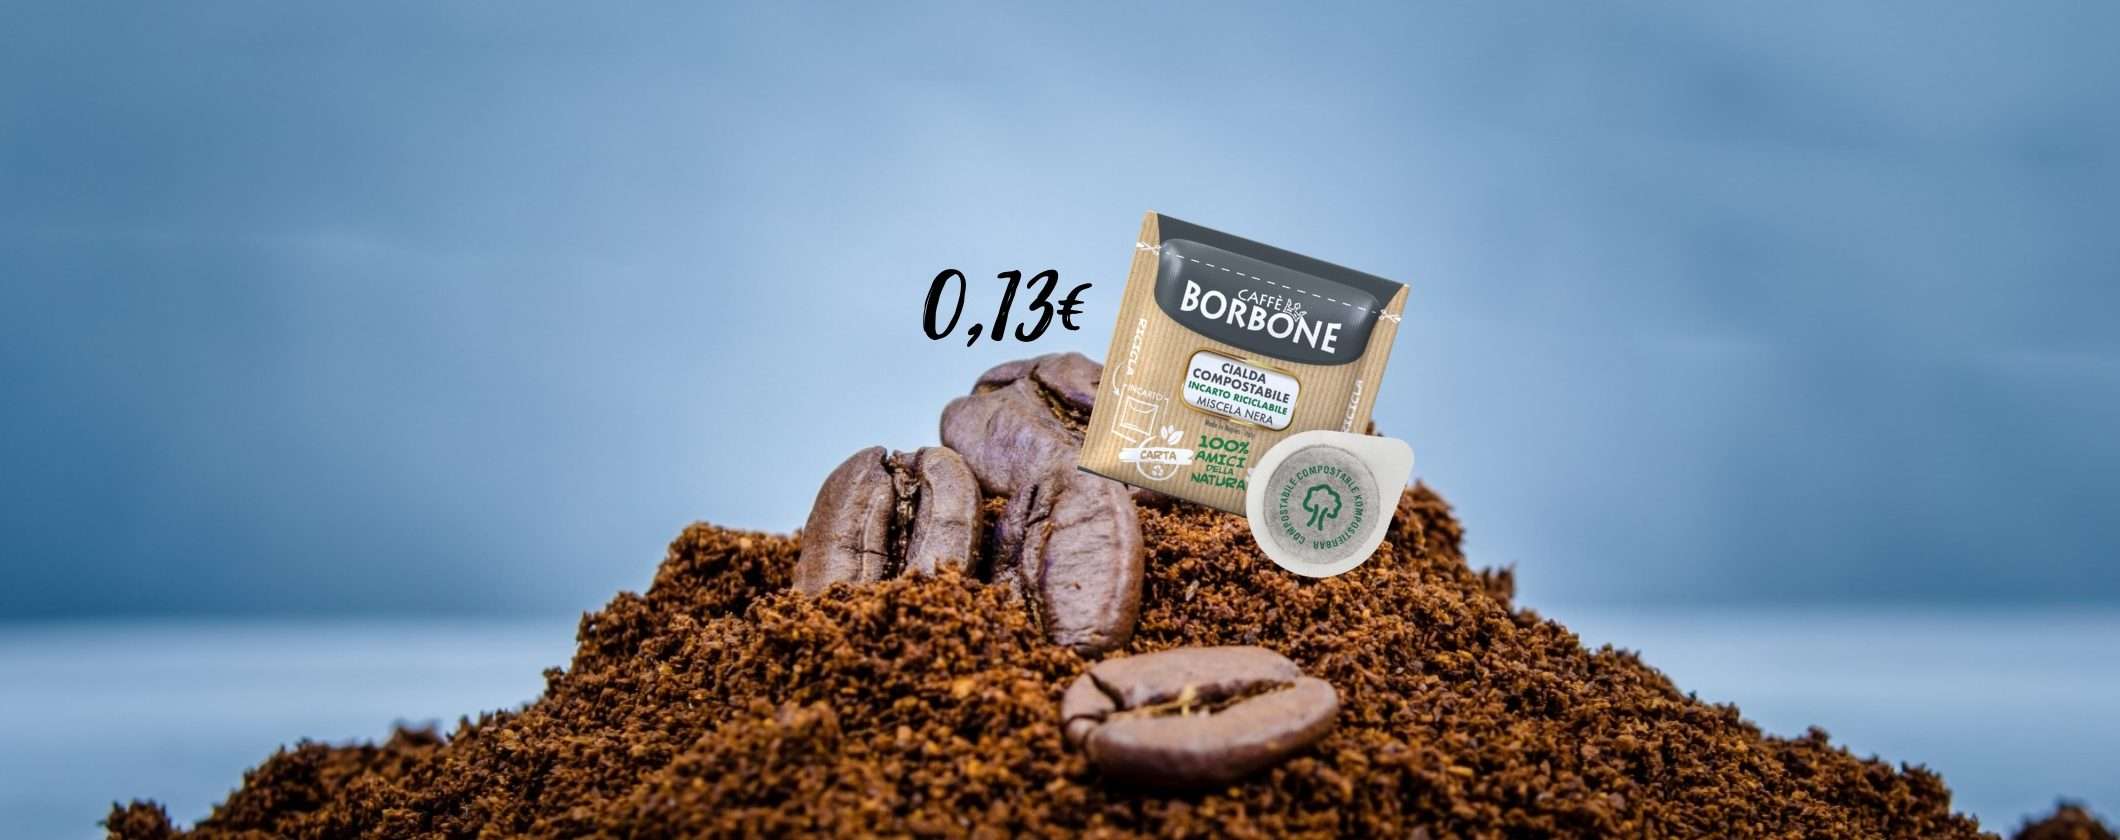 Cialde Caffè Borbone: l'espresso Napoli a soli 0,13€